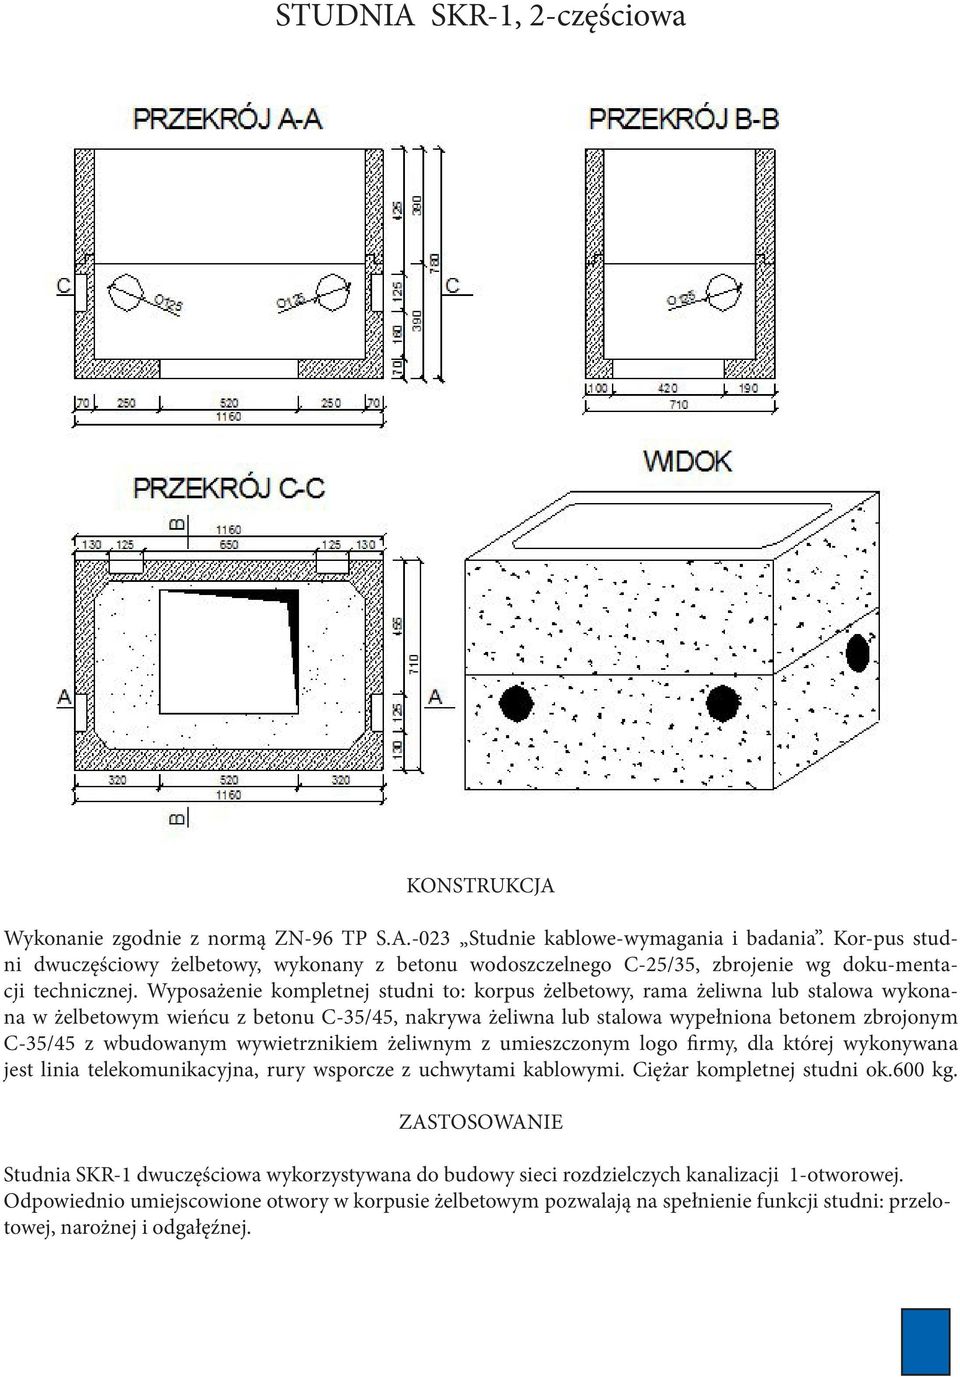 Wyposażenie kompletnej studni to: korpus żelbetowy, rama żeliwna lub stalowa wykonana w żelbetowym wieńcu z betonu C-35/45, nakrywa żeliwna lub stalowa wypełniona betonem zbrojonym C-35/45 z